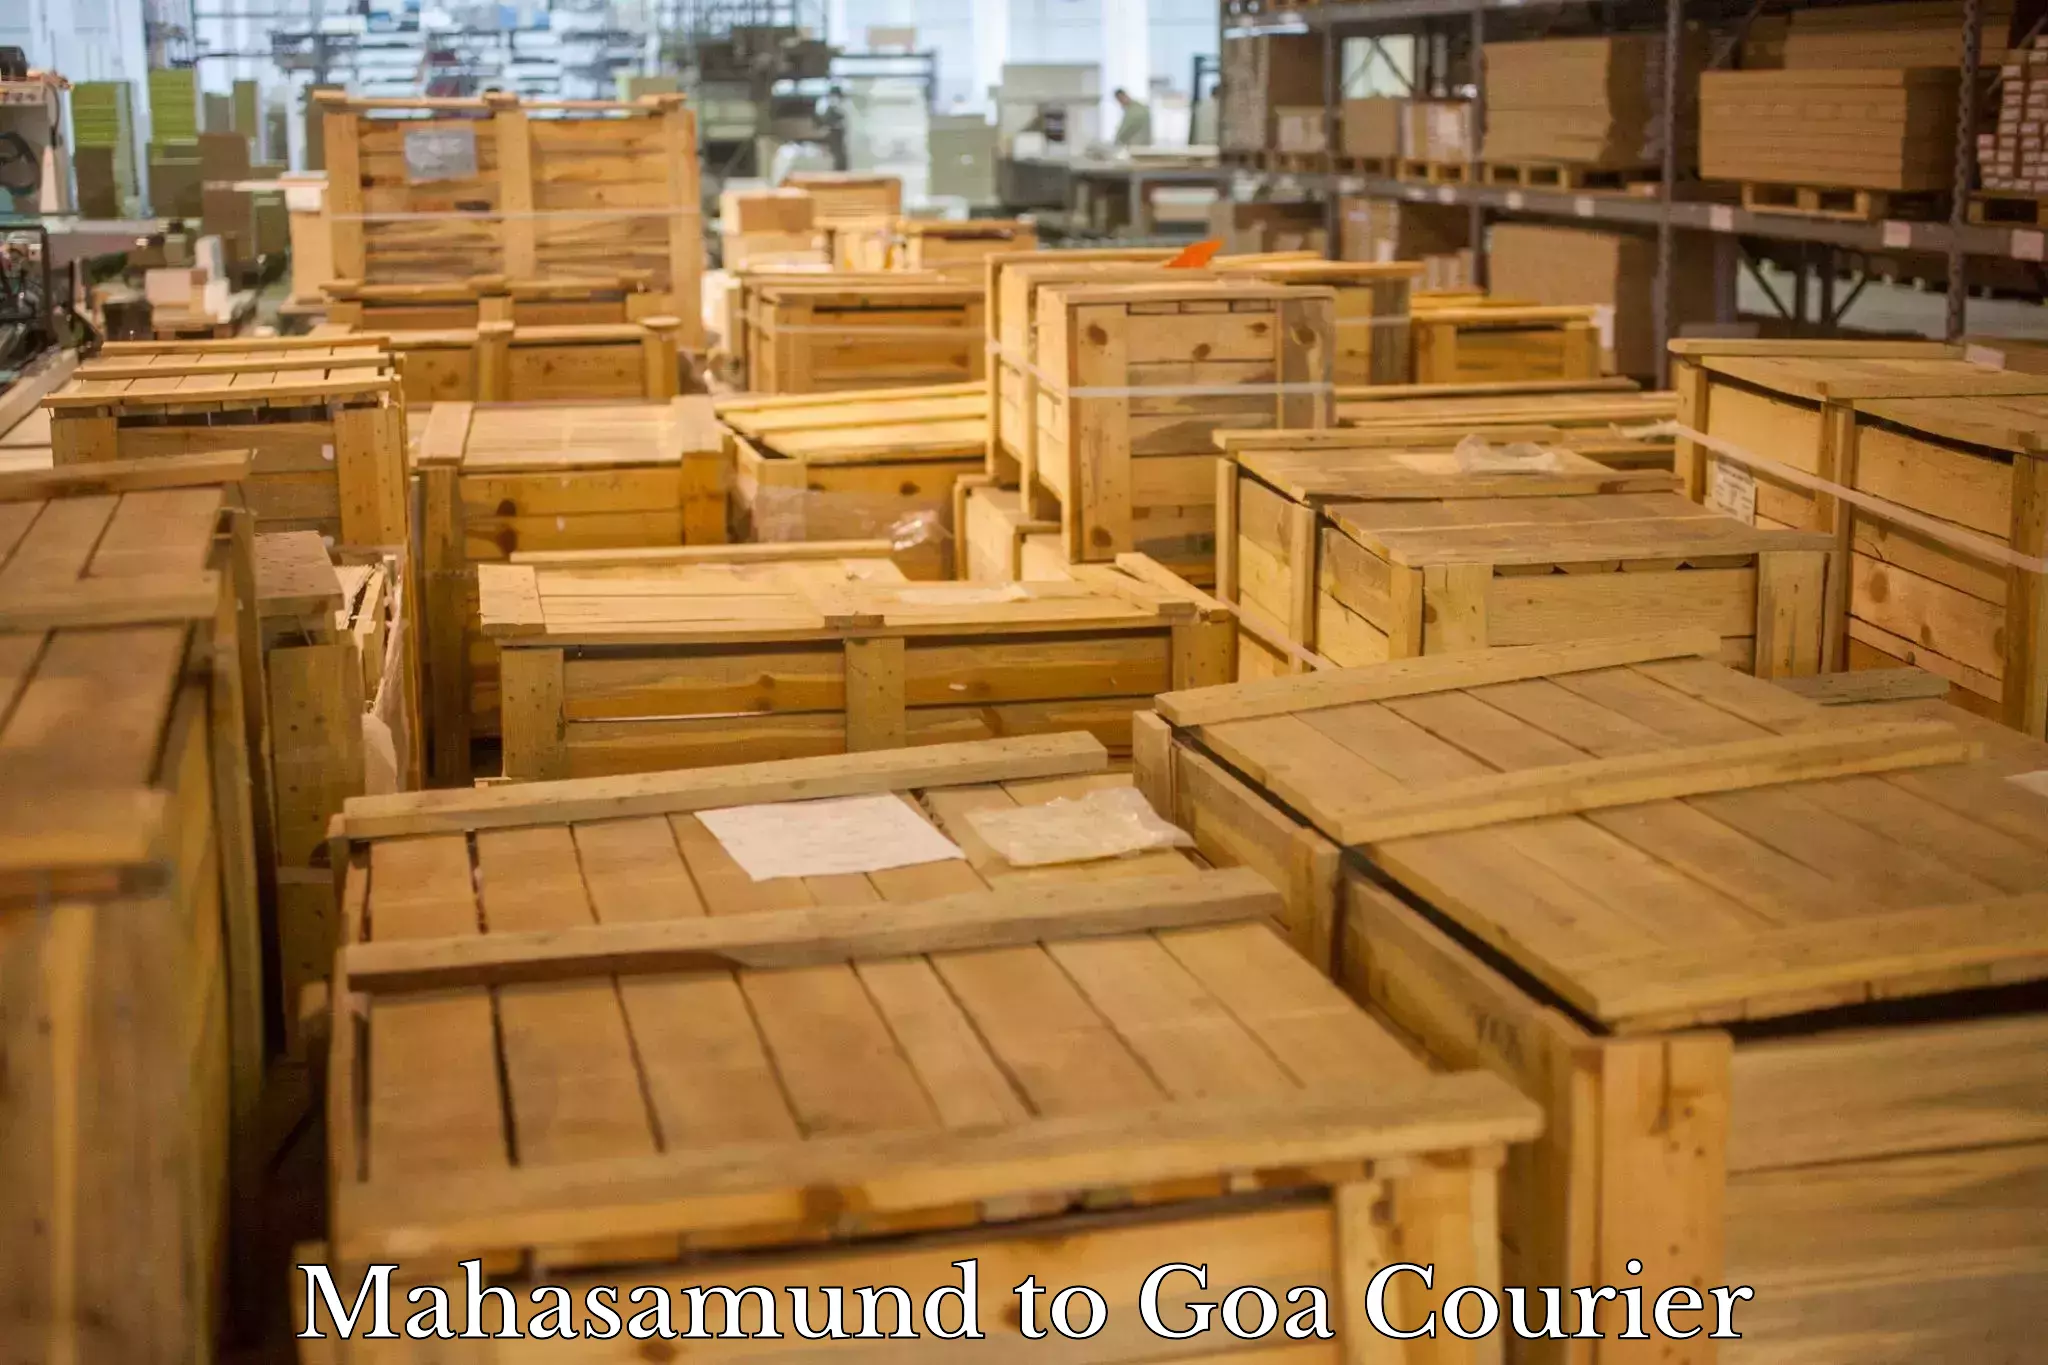 Door-to-door freight service Mahasamund to NIT Goa